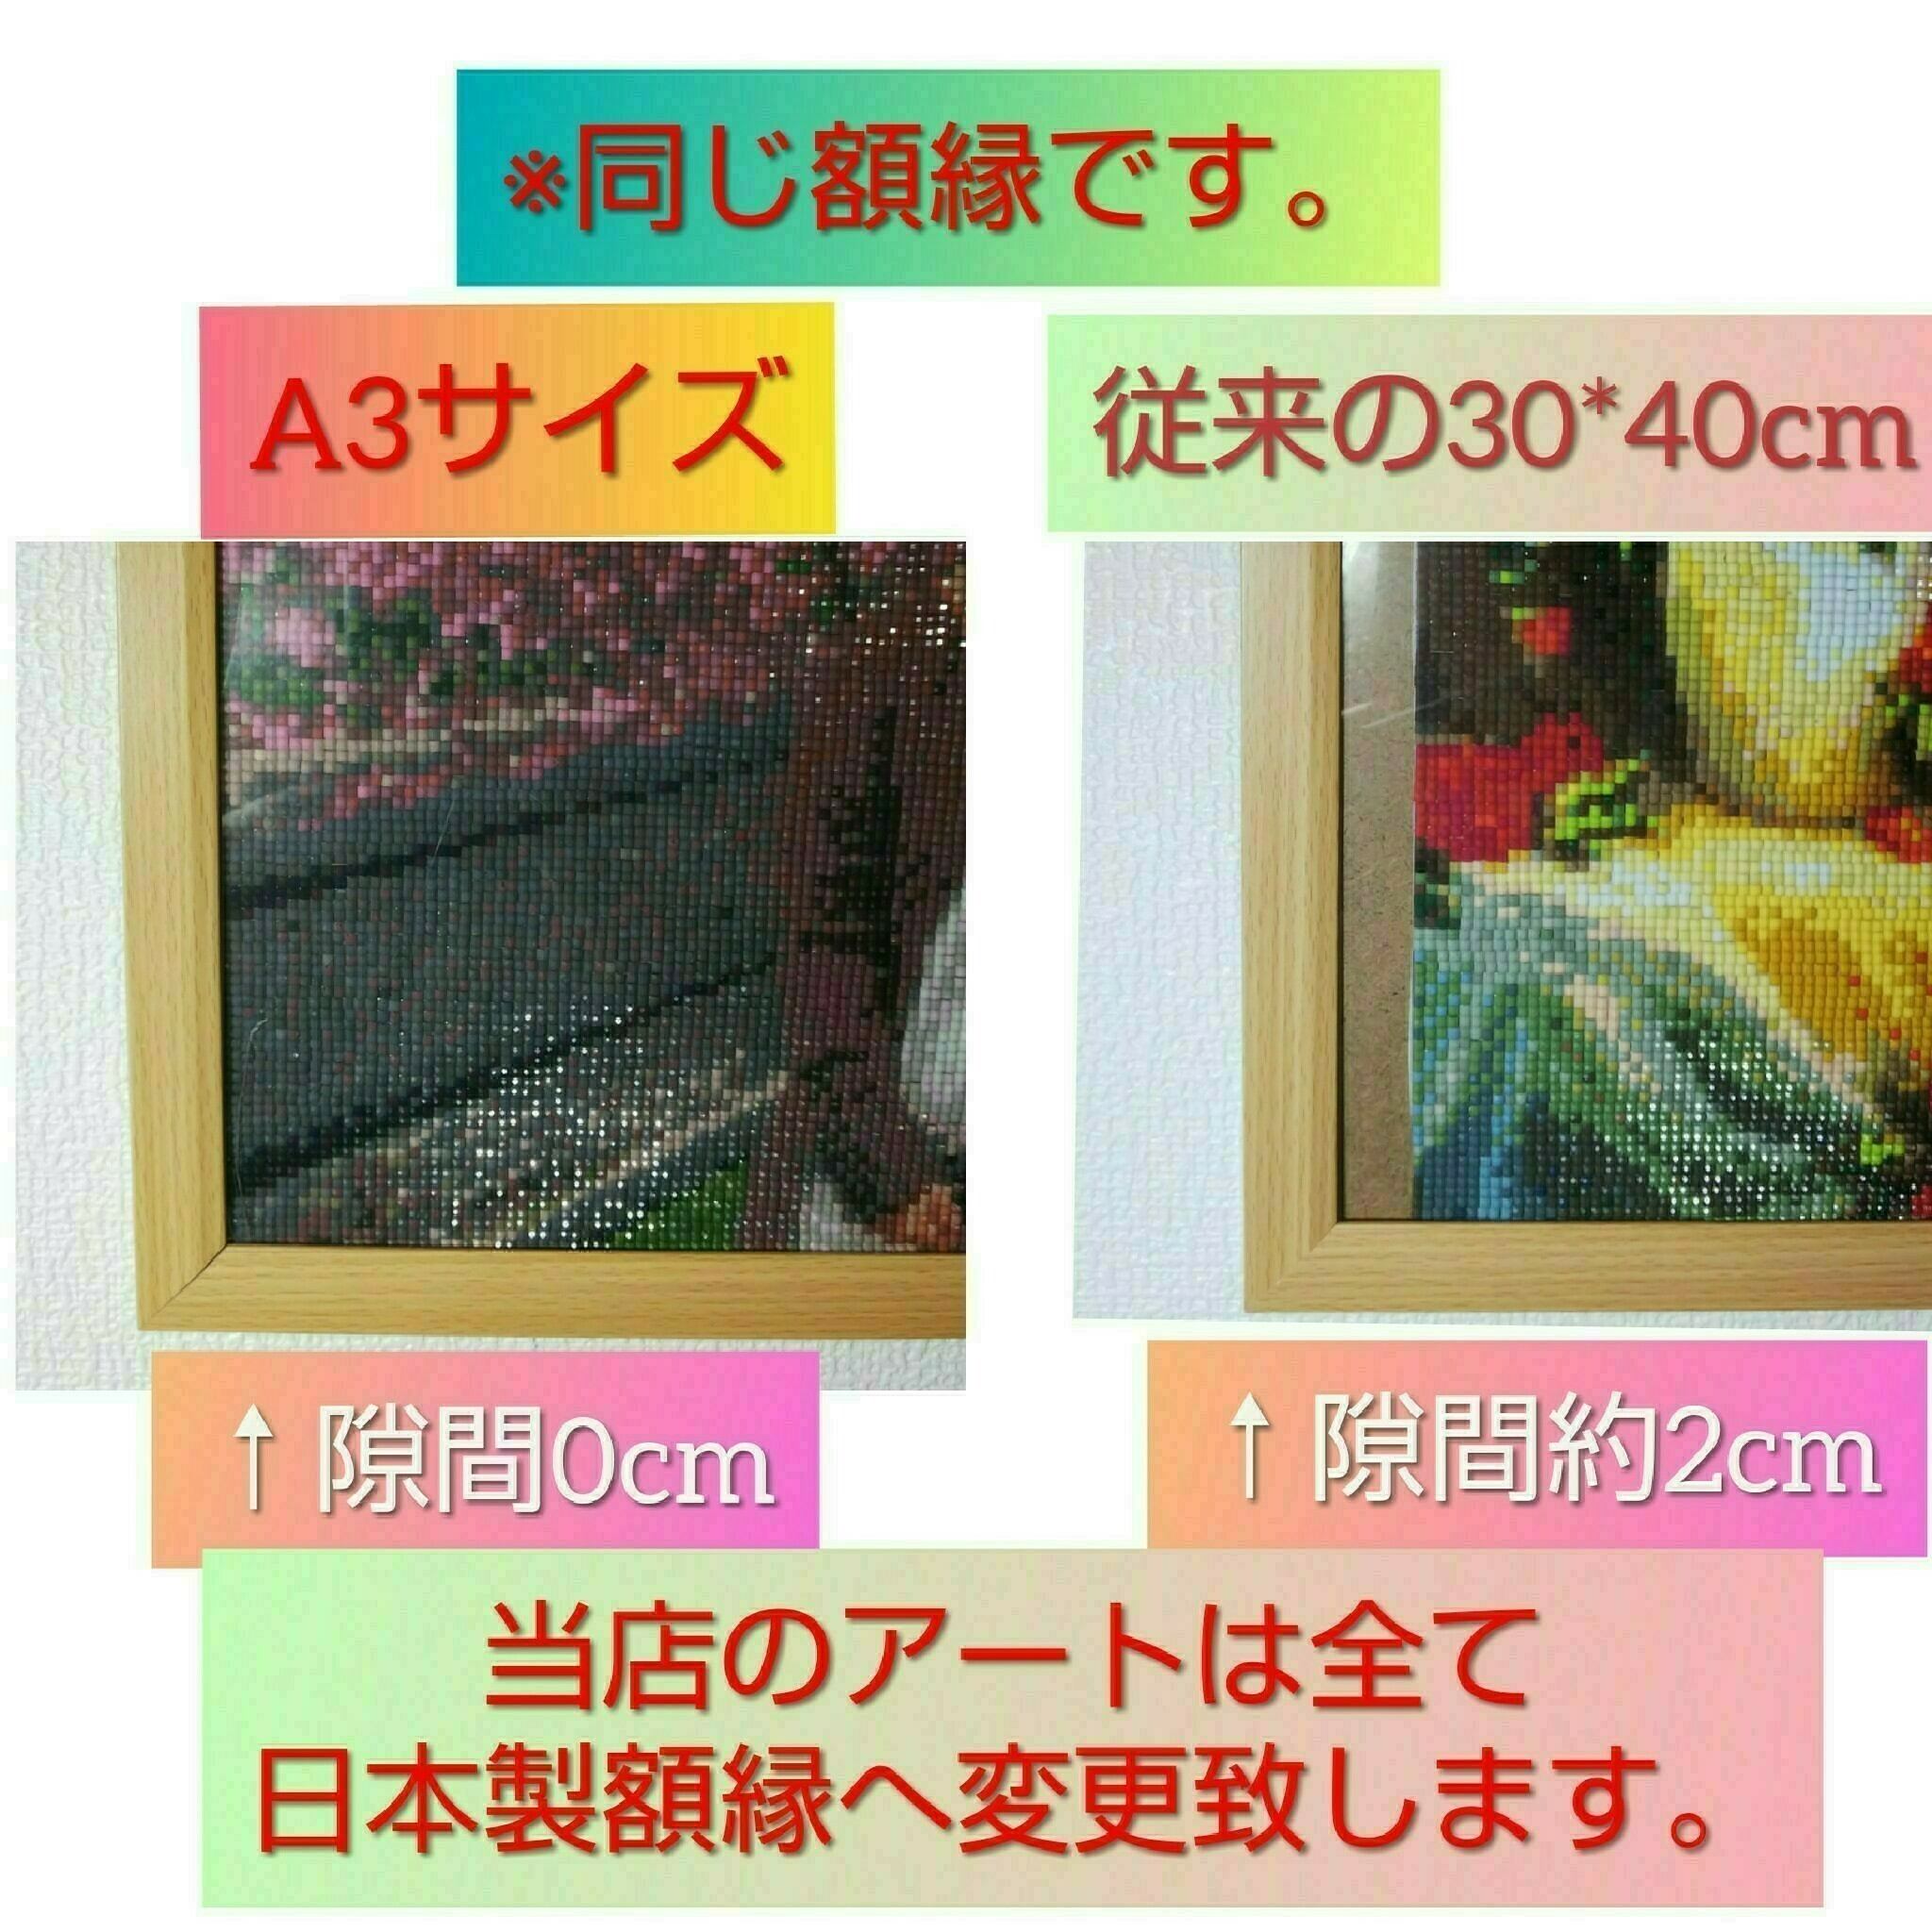 A3サイズ square【tei-131】ダイヤモンドアート